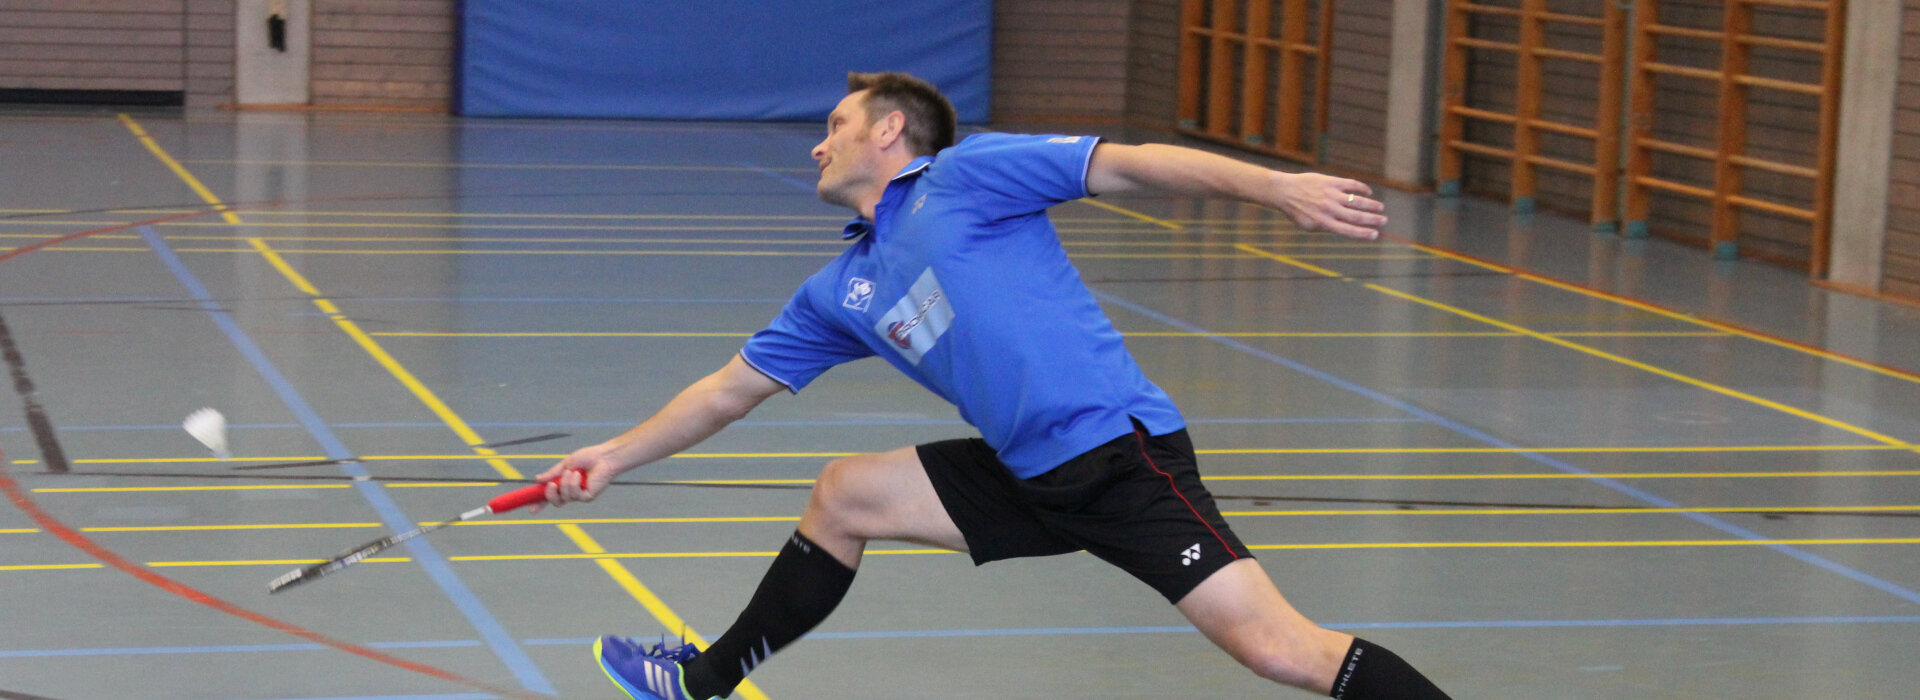 Vfb Friedrichshafen Badminton